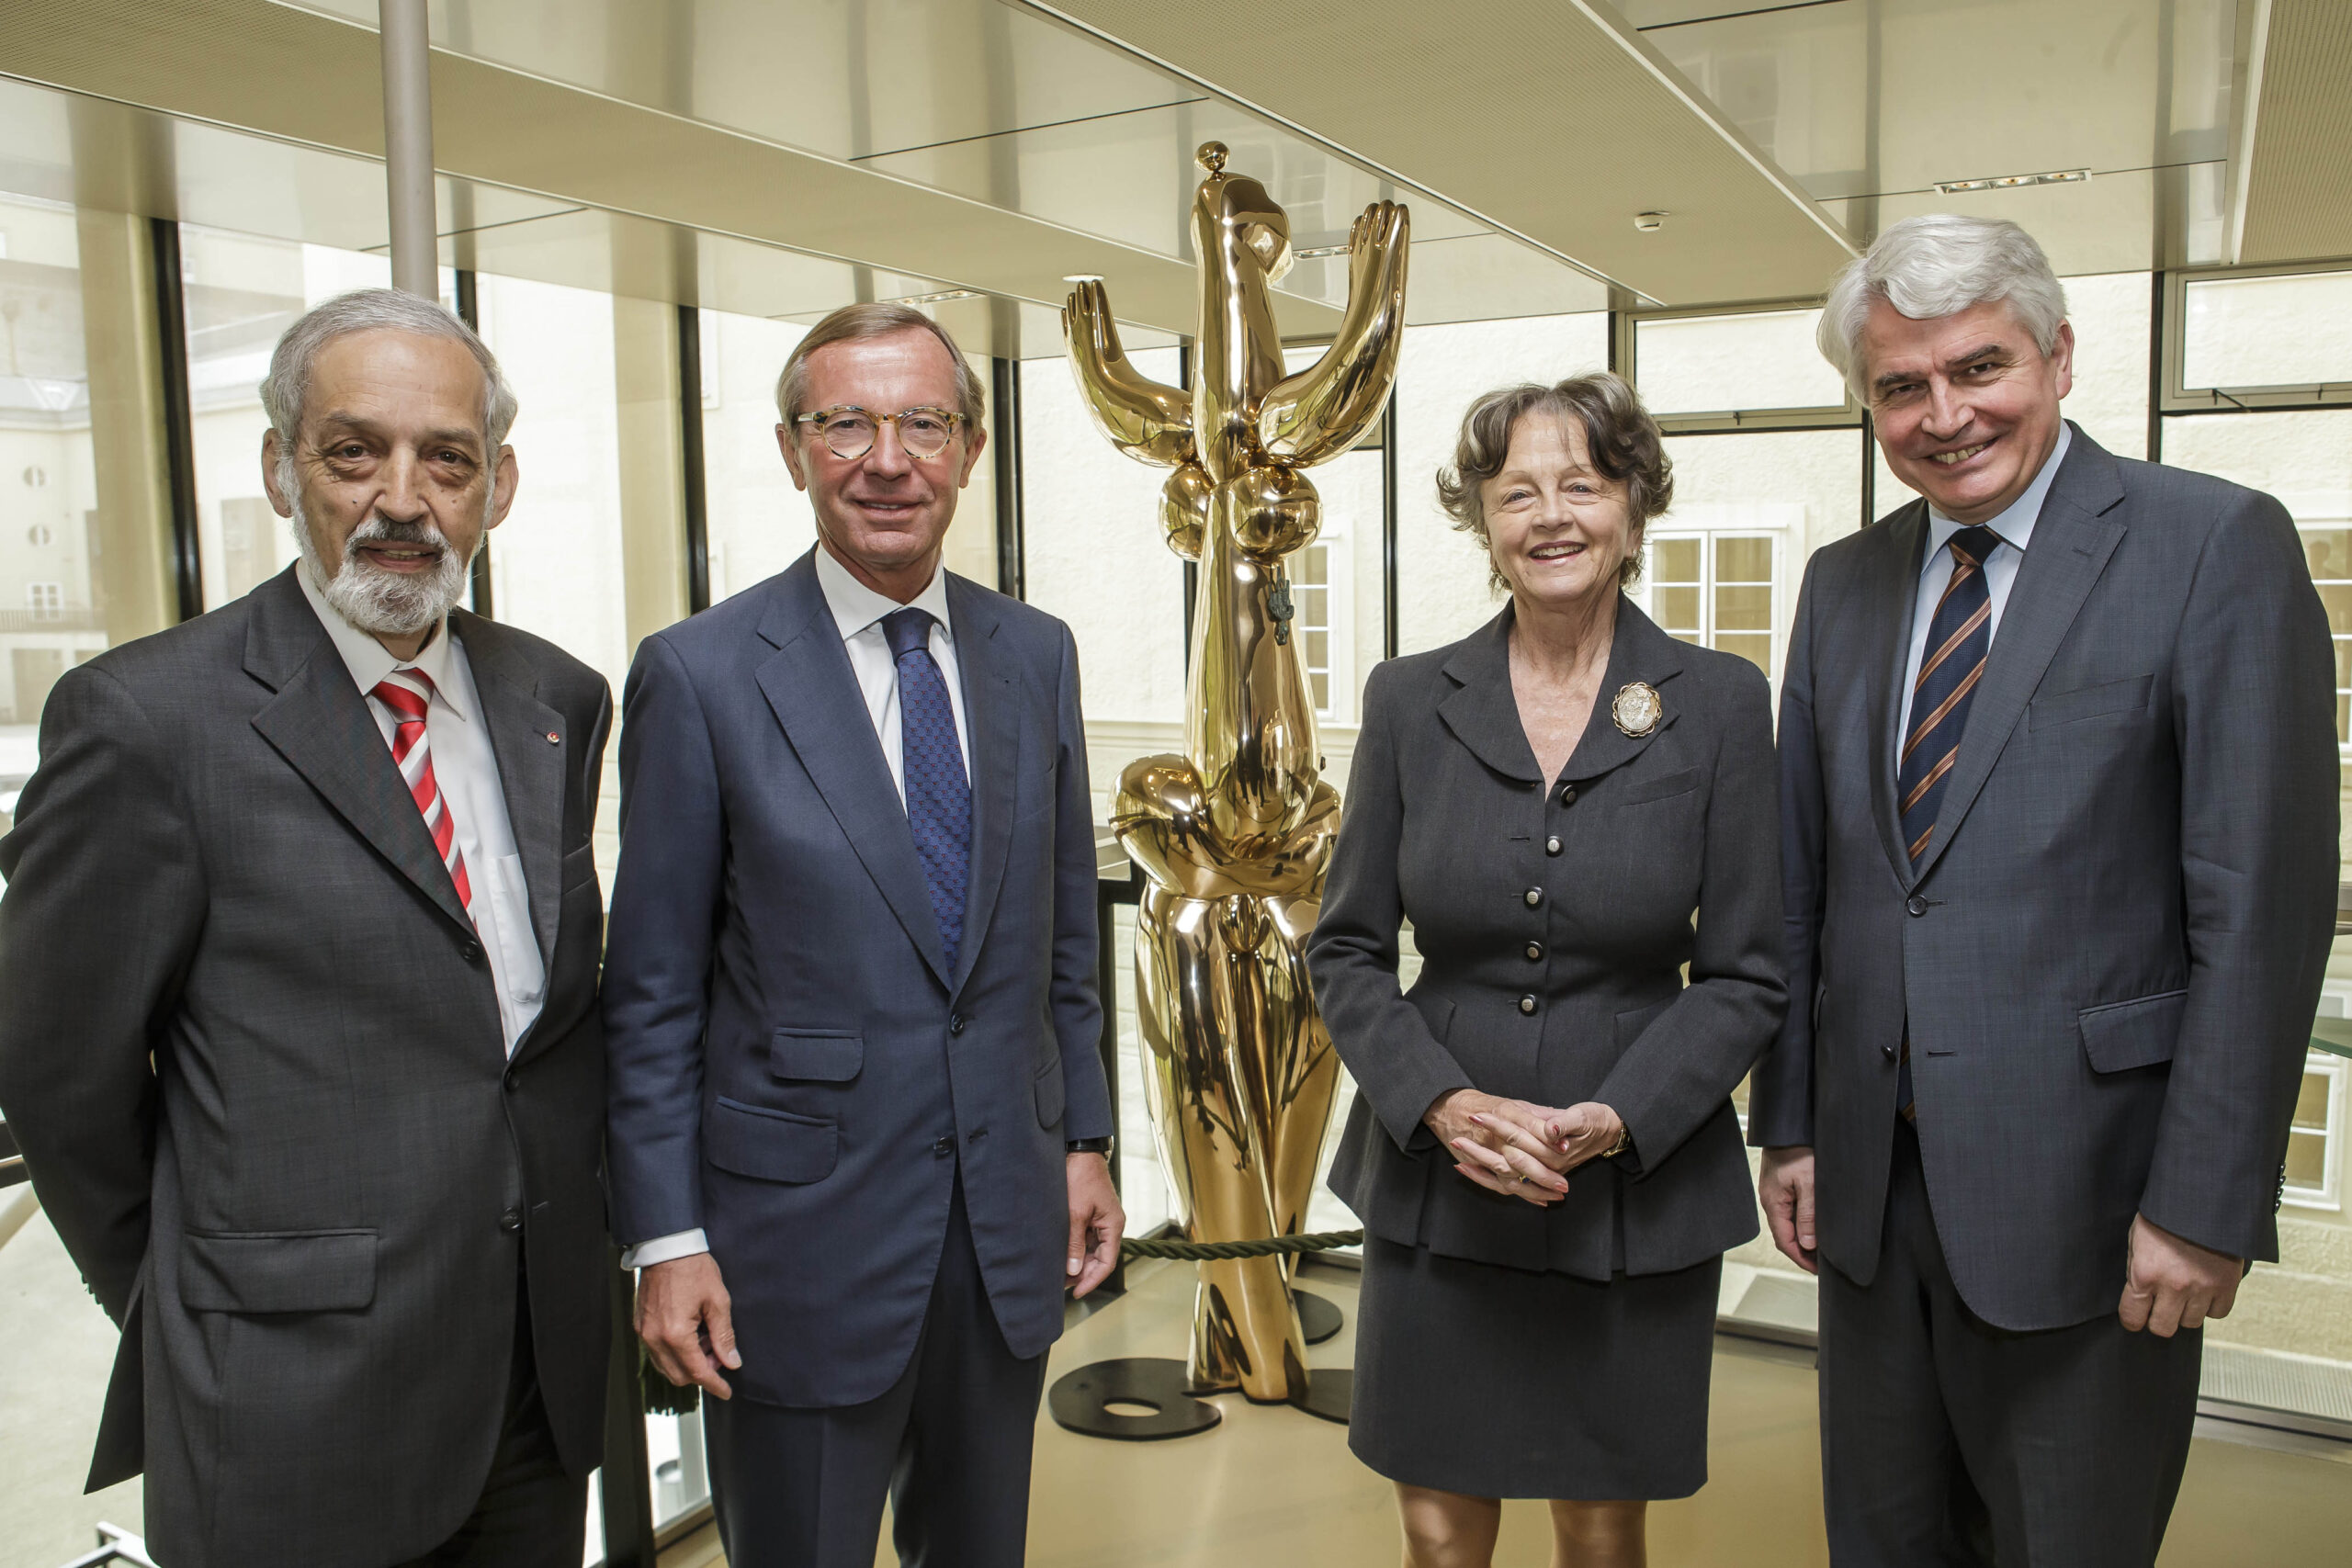 uer, Prof. Lotte Ranft und Rektor Schmidinger mit der Bronzefigur "Galene 2012" © Kolarik/LEO